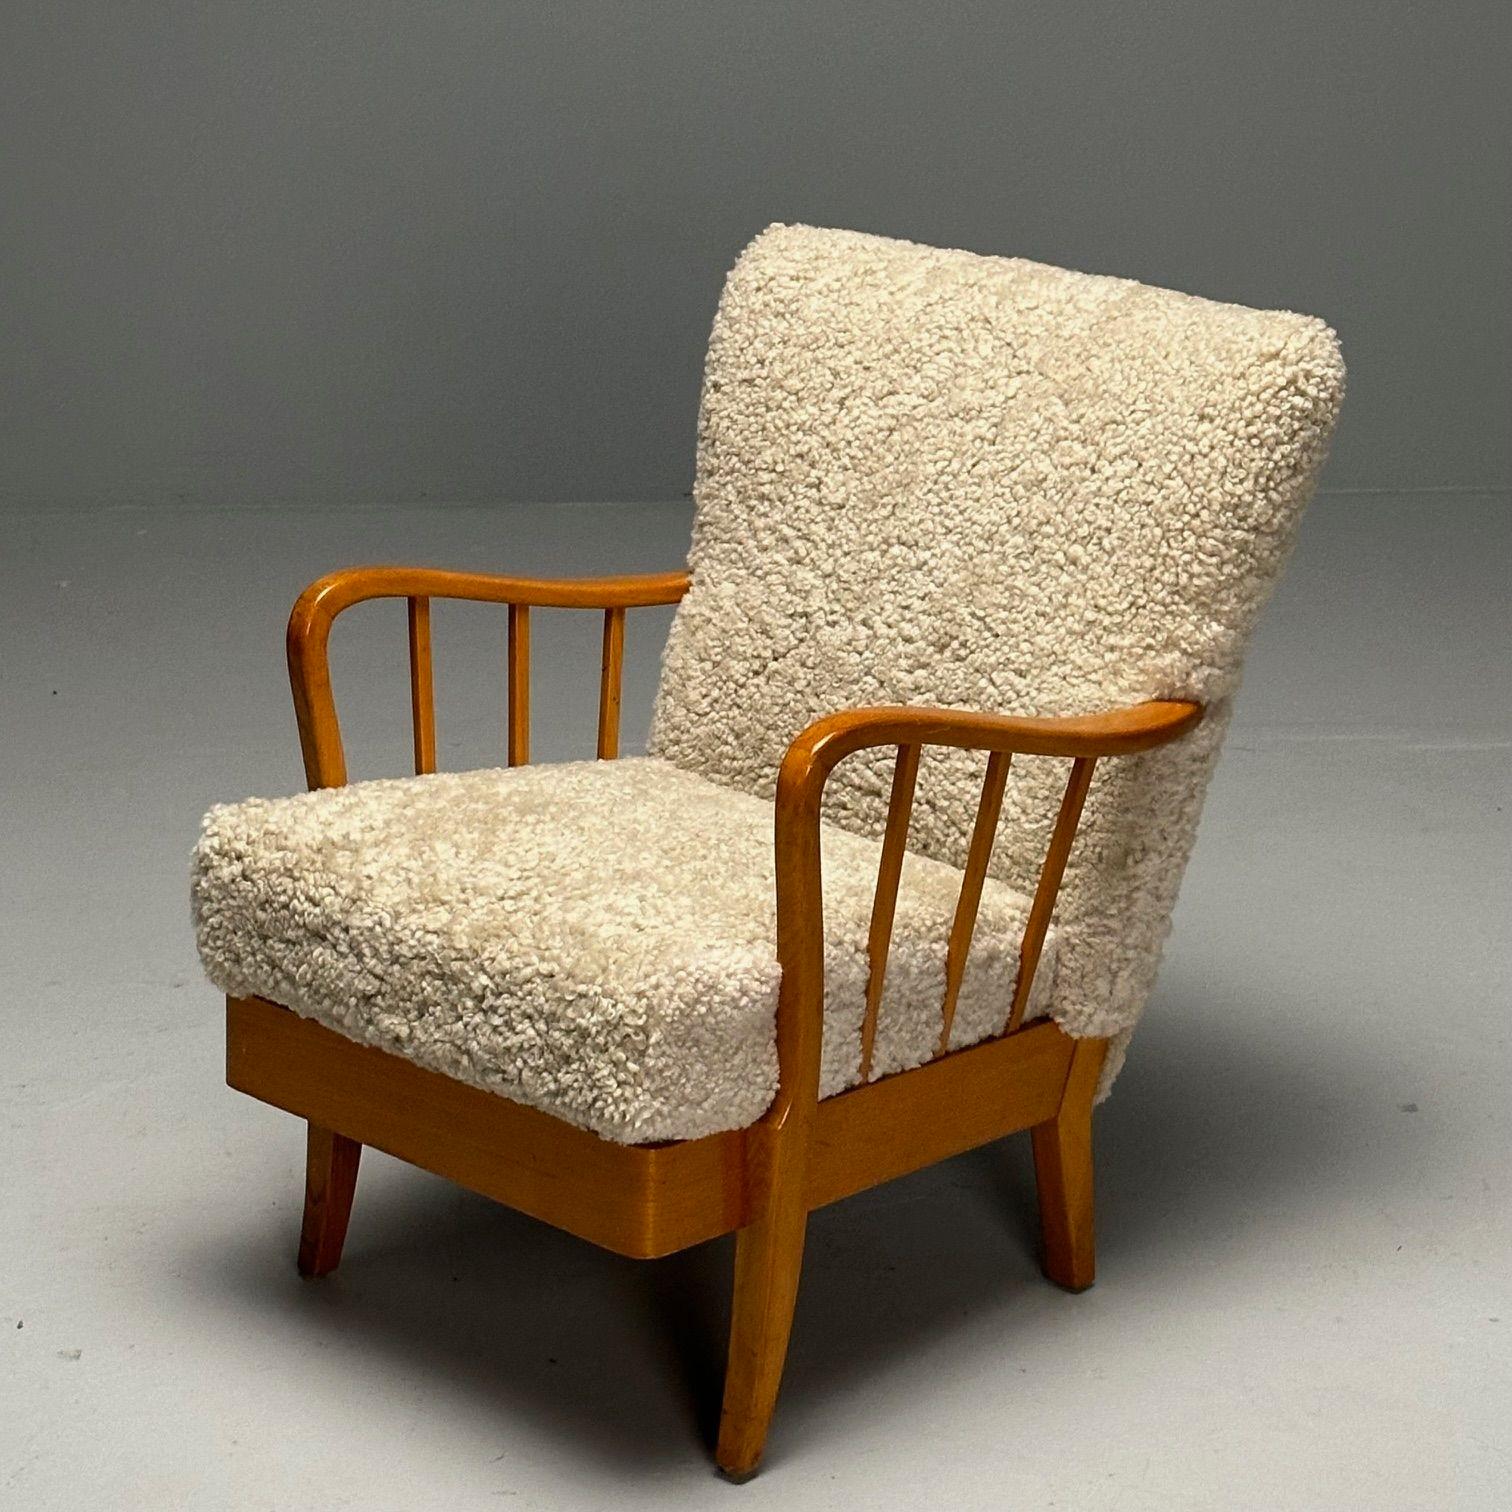 Alfred Christensen Style, Schwedischer Sessel der Jahrhundertmitte, Shearling, Buche
 
Loungesessel, entworfen und hergestellt in Dänemark um 1950. Die Rückenlehne und der Sitz sind mit einem hellbeigen Polster aus echtem Curly Shearling überzogen.